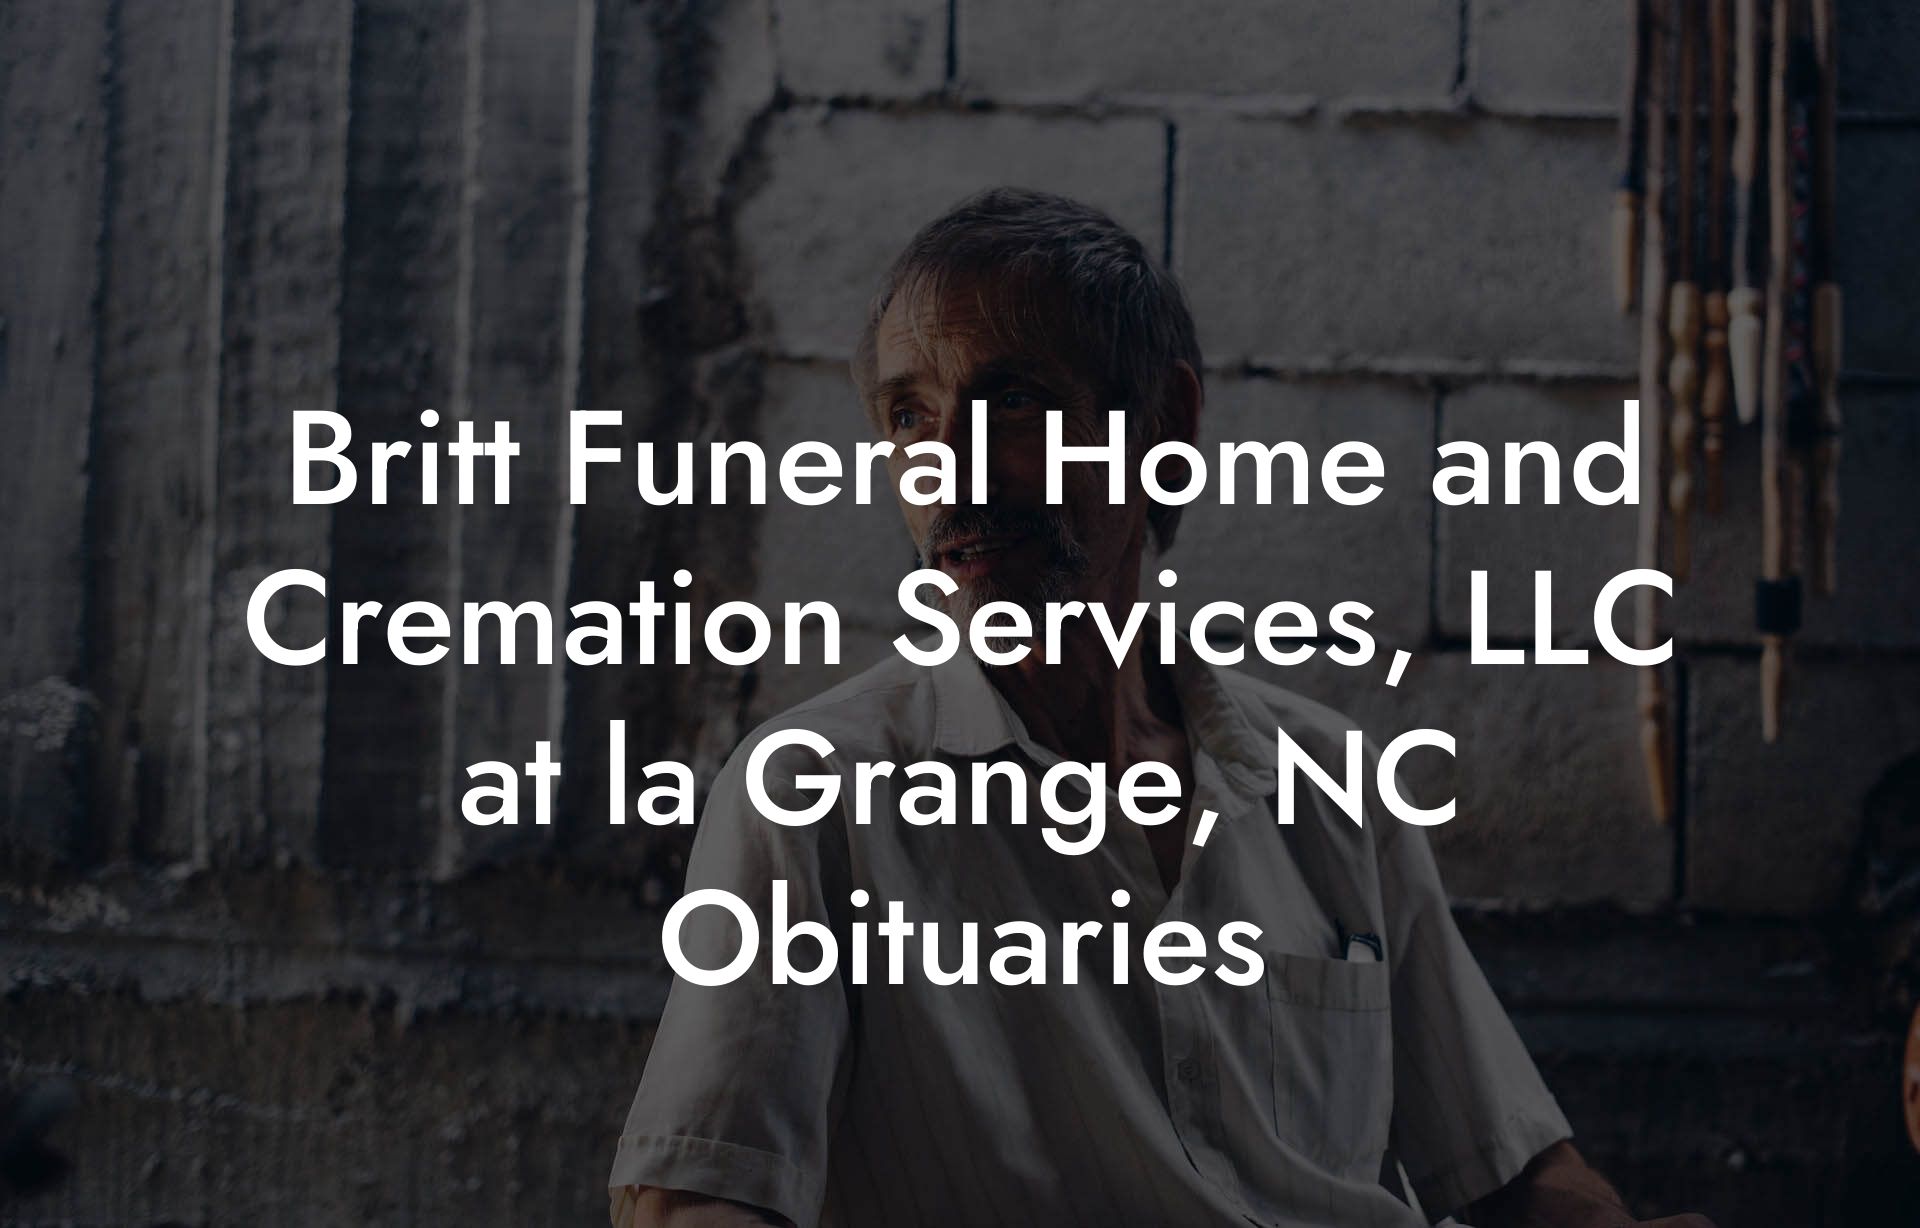 Britt Funeral Home and Cremation Services, LLC at la Grange, NC Obituaries